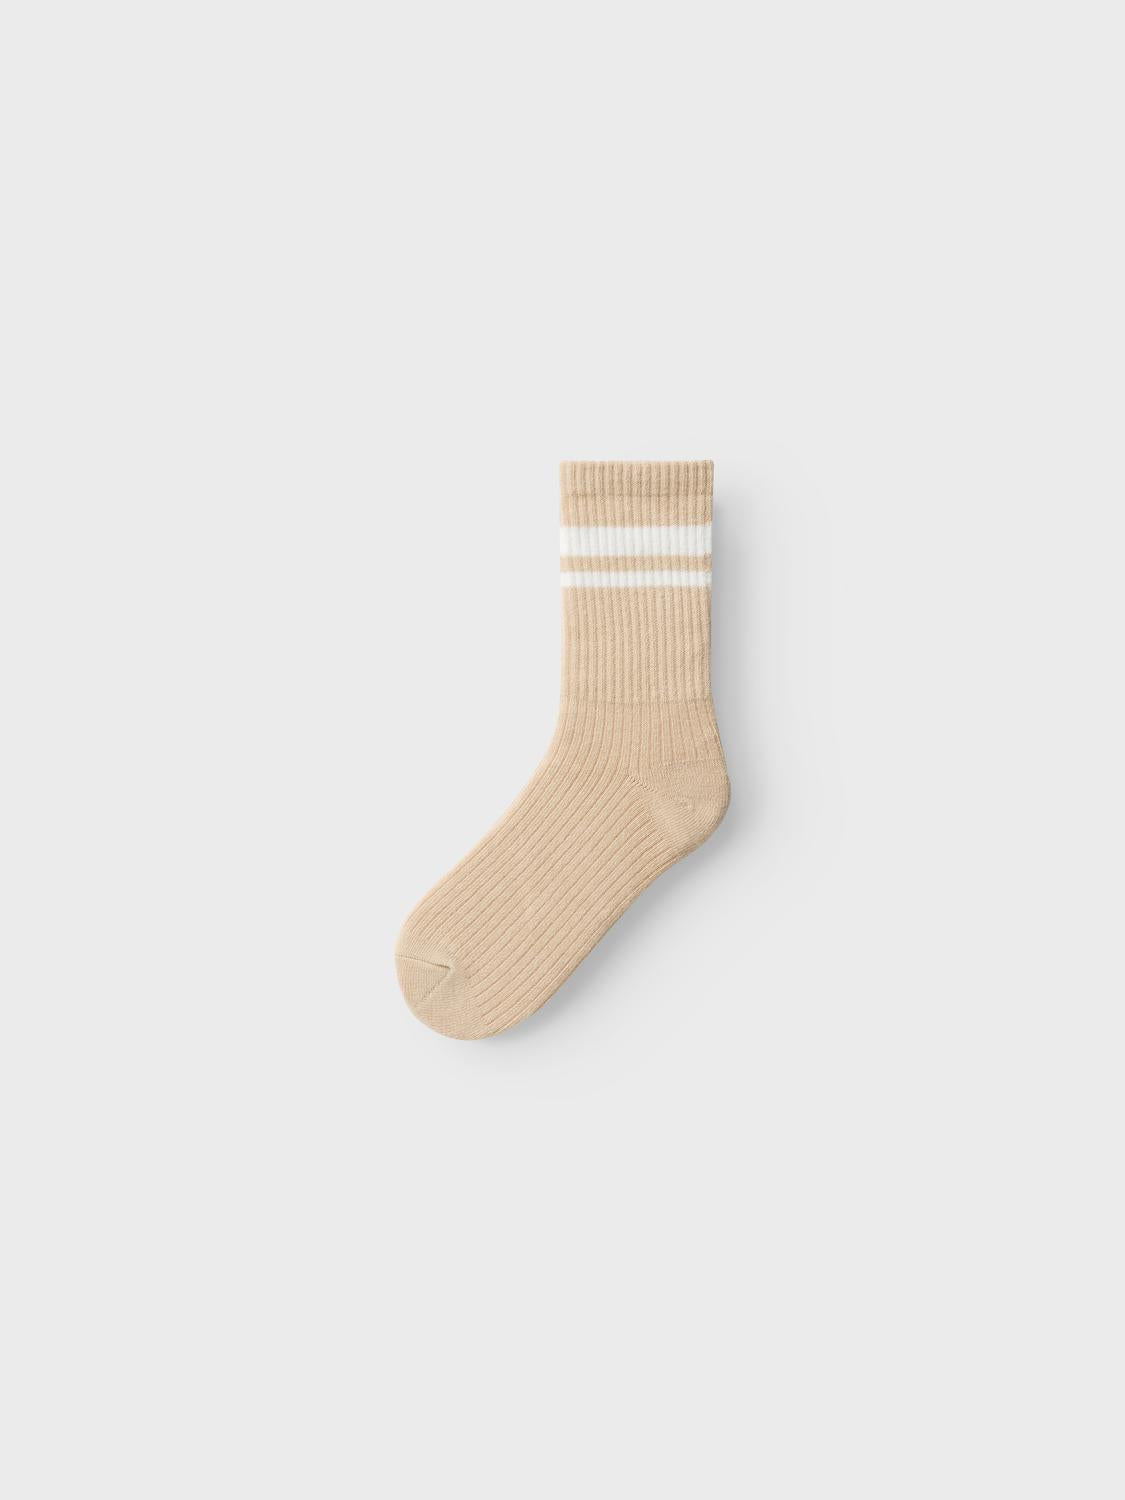 NKMNEANO Socks - Sandshell